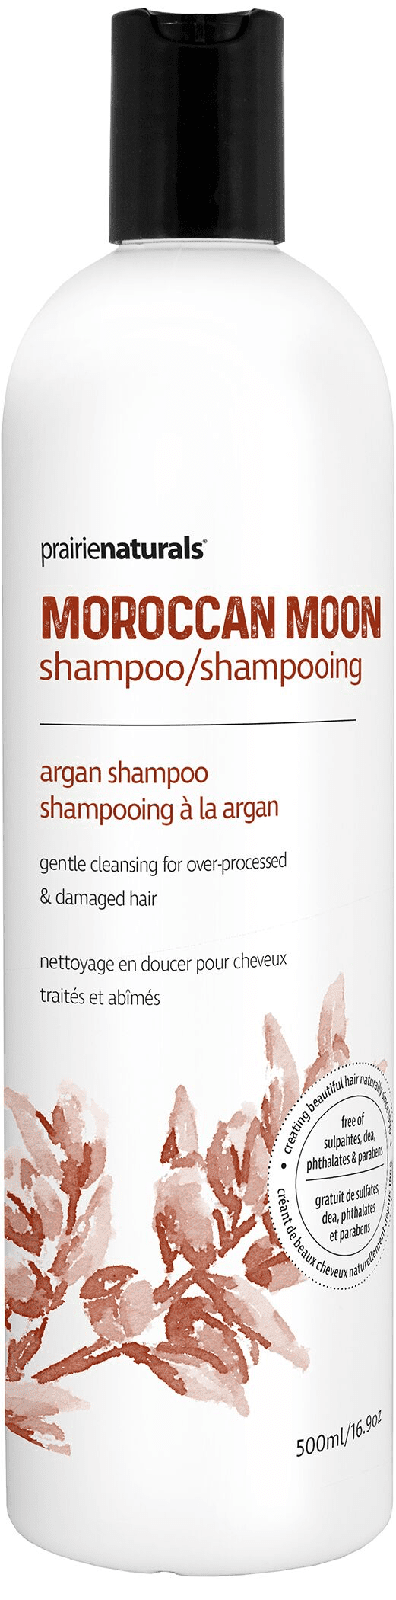 Prairie Naturals Moroccan Moon Argan Shampoo 500 mL Image 2